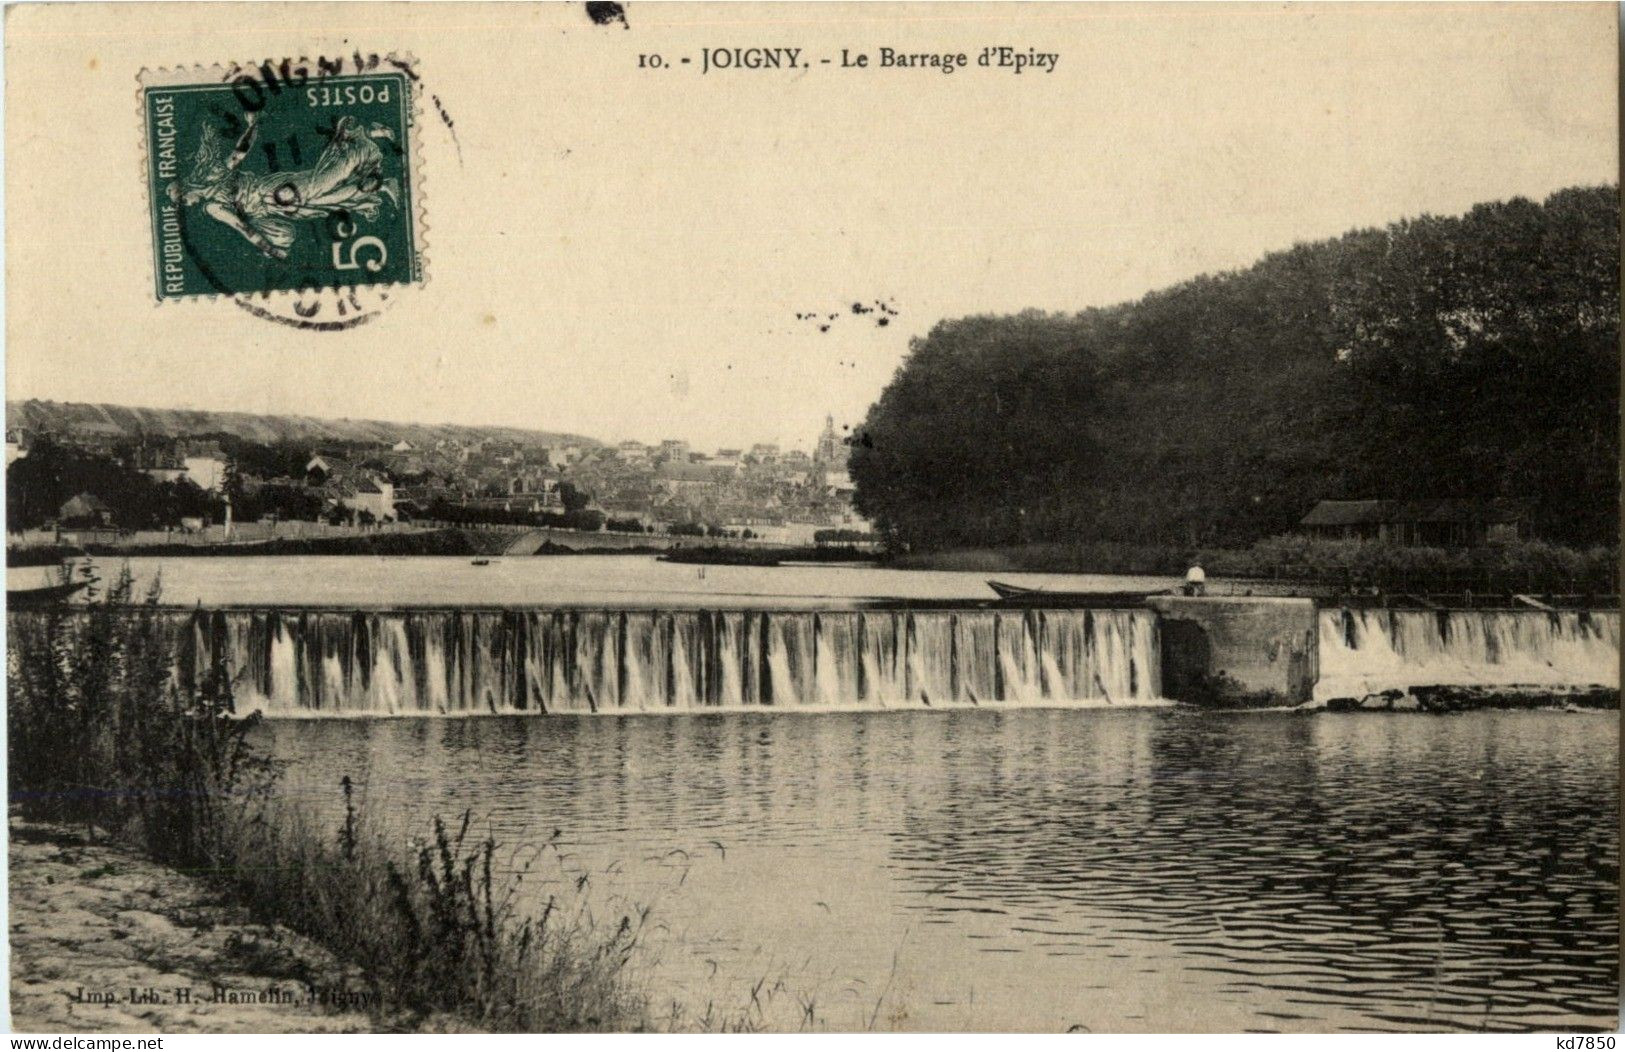 Joigny - Joigny